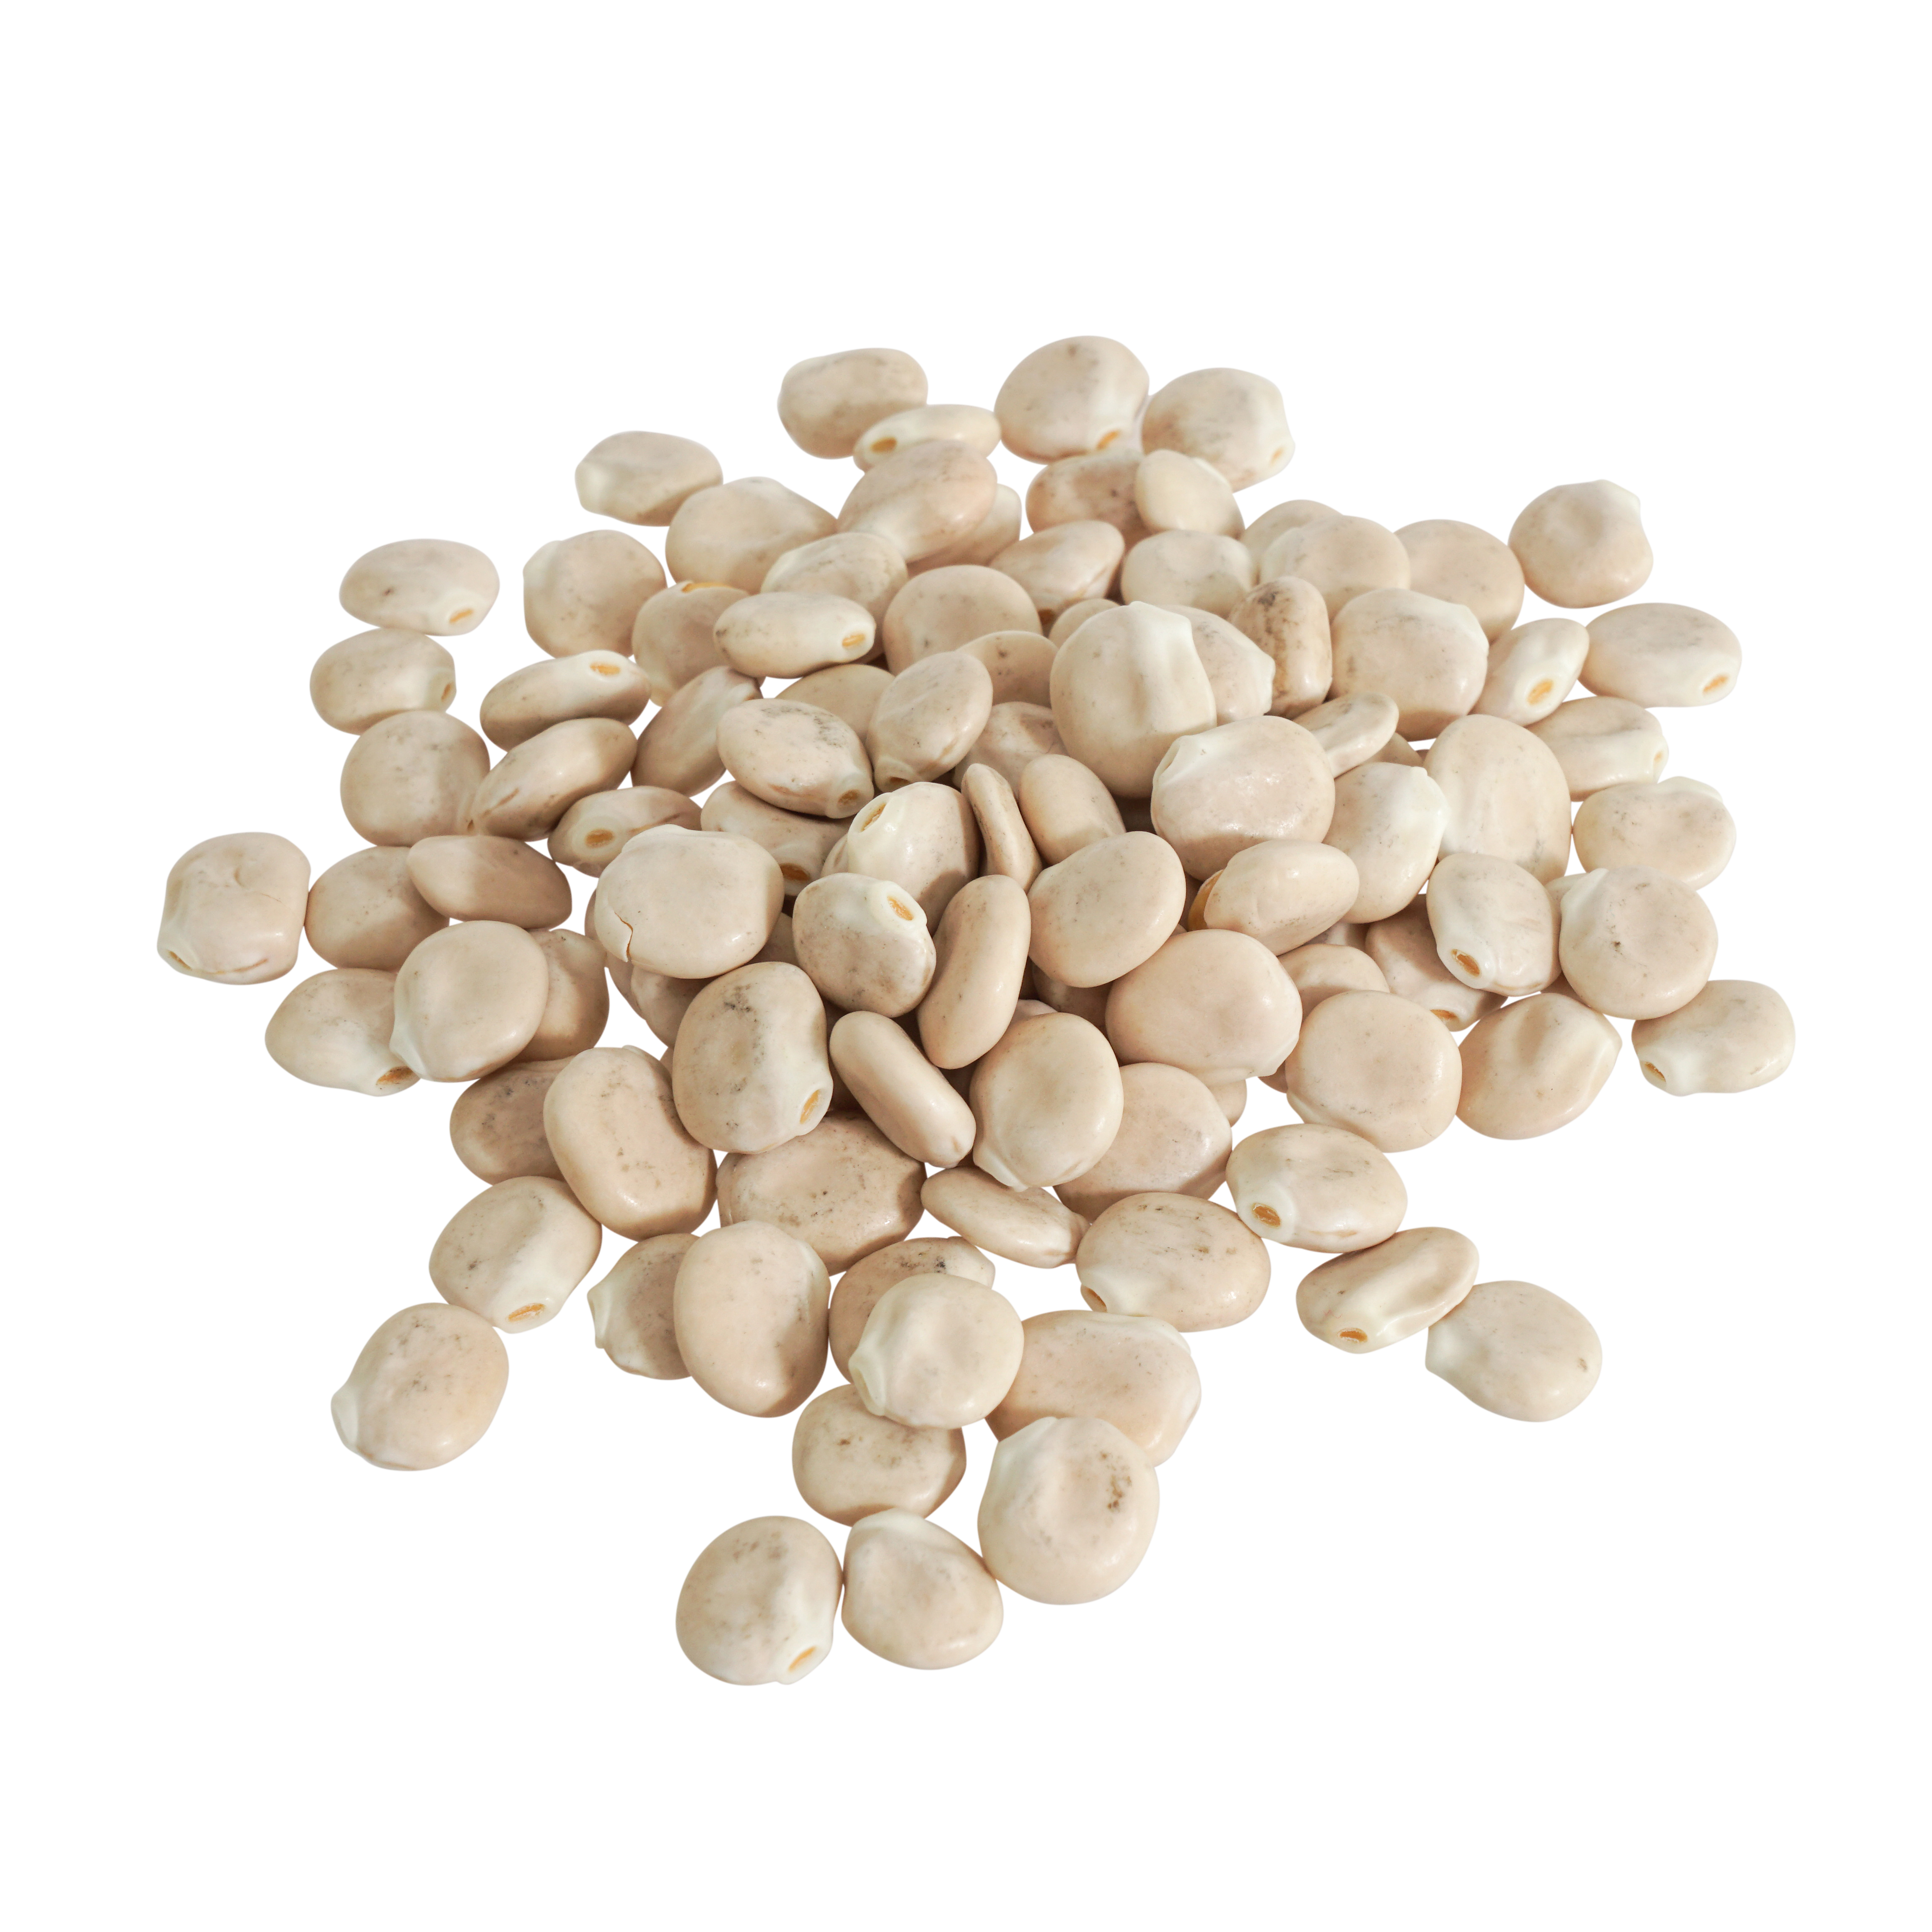 Weiße Lupinen Samen Bio keimfähig 2,5 kg